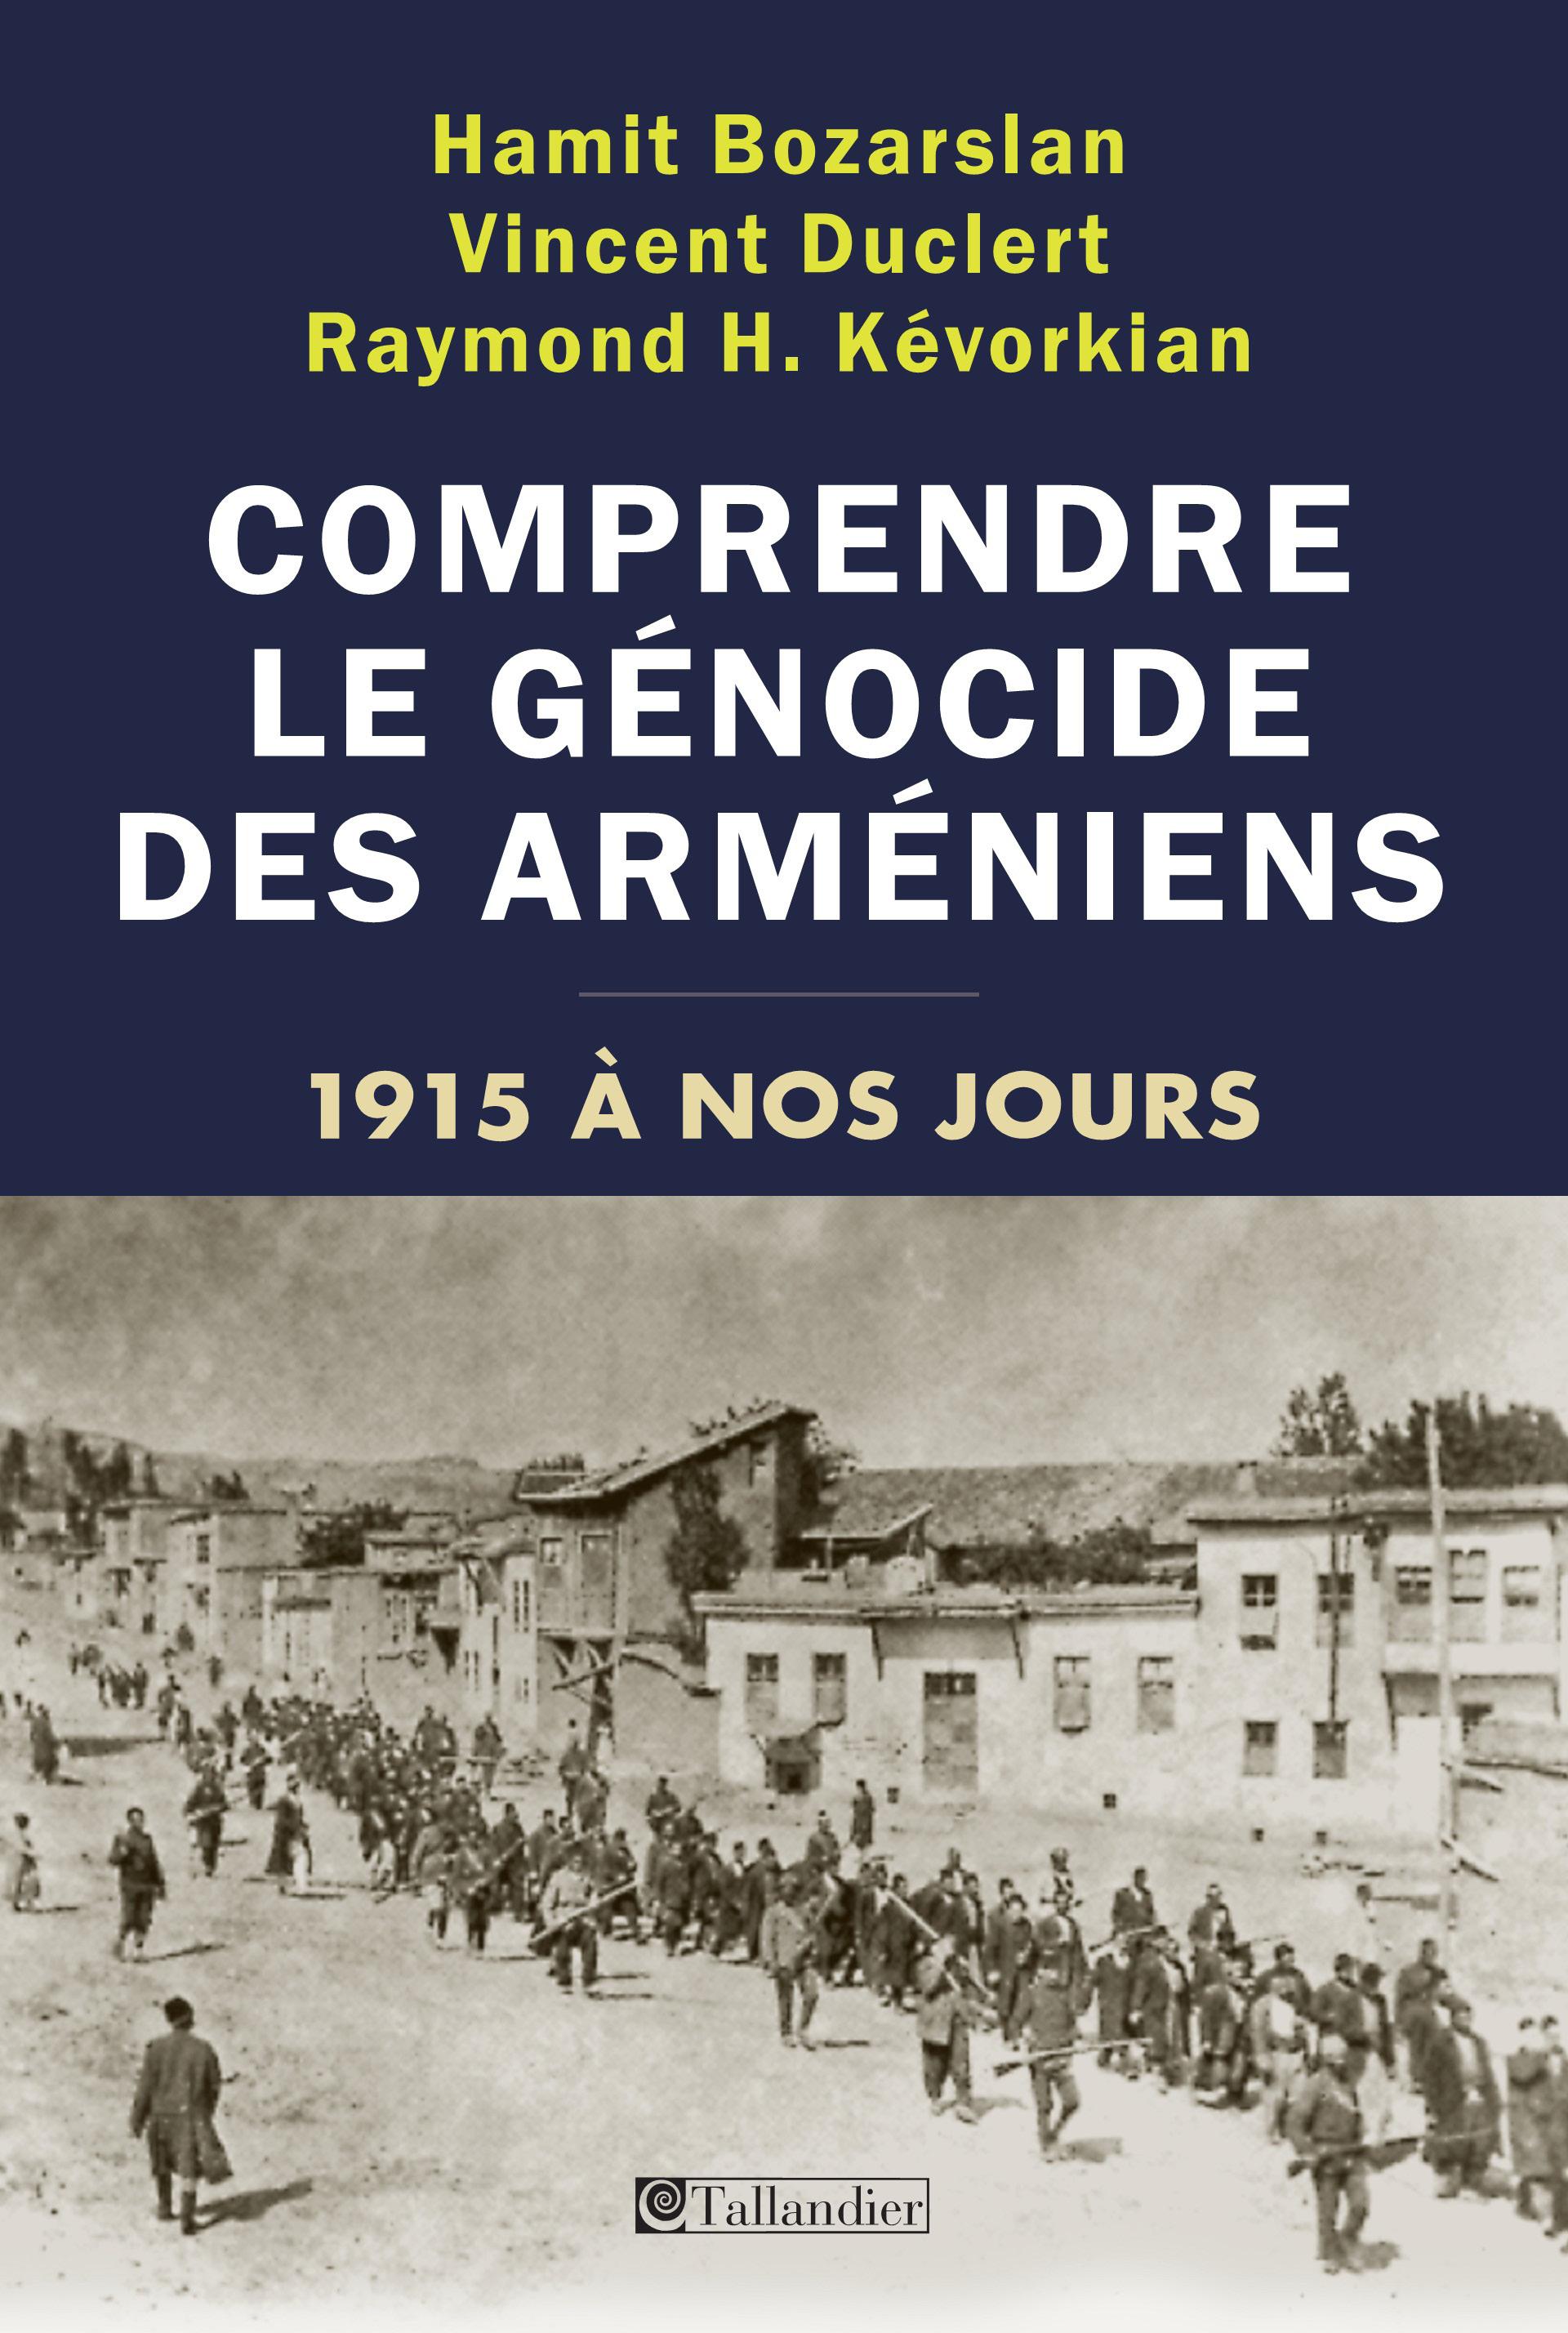 Copertina Comprendre le genocide des armeniens bozarslan duclert kevorkian.jpg